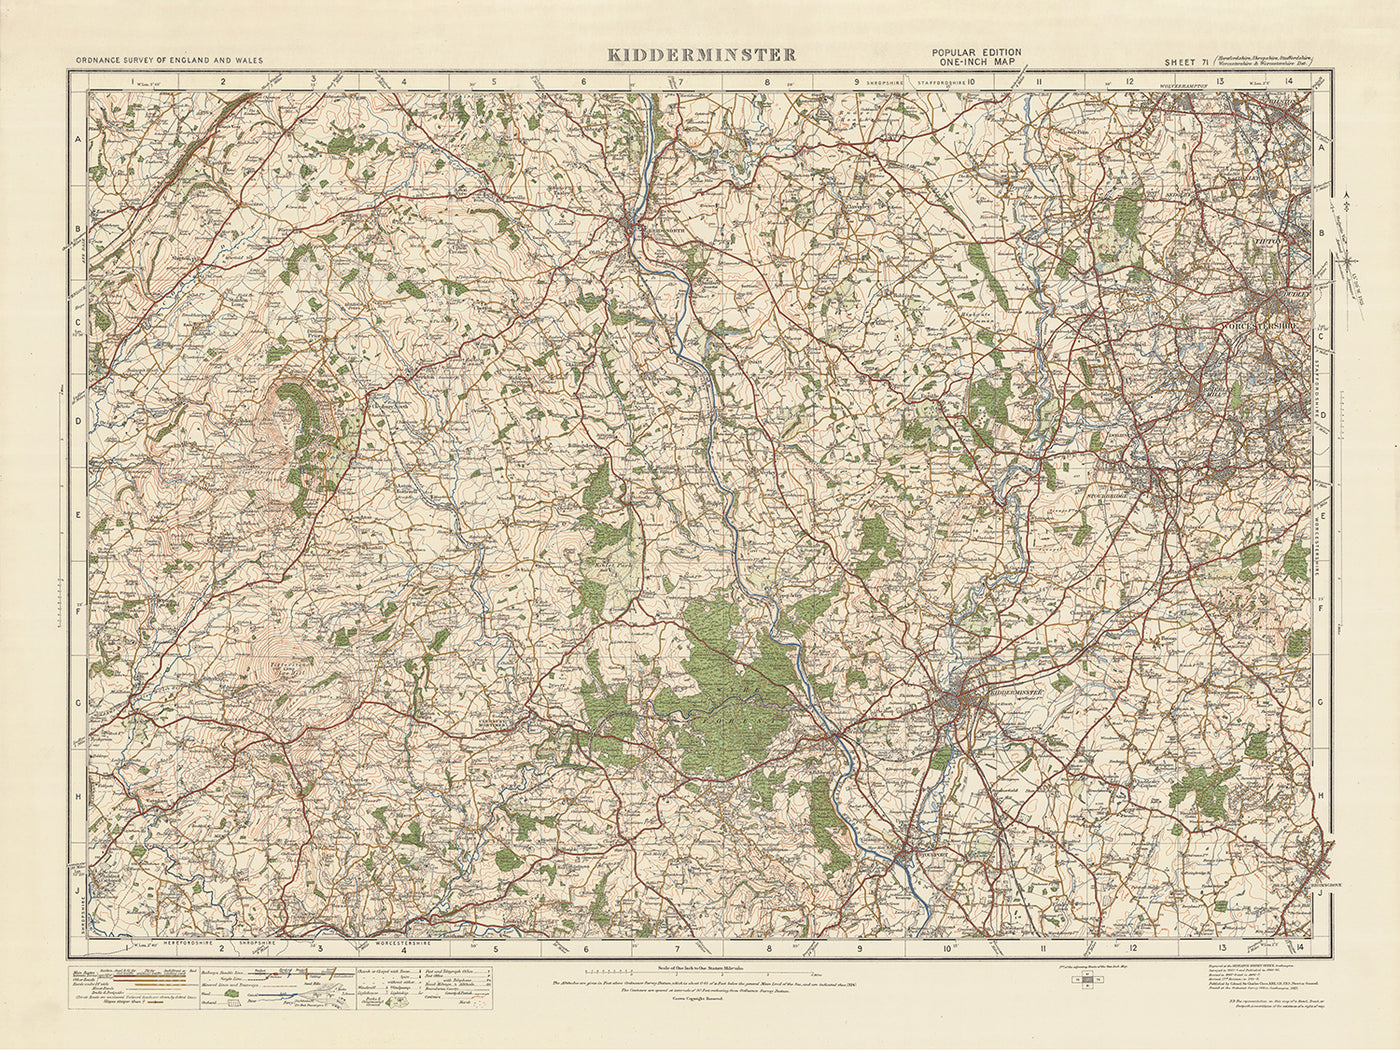 Carte Old Ordnance Survey, feuille 71 - Kidderminster, 1925 : Dudley, Stourbridge, Stourport-on-Severn, Bridgnorth, réserve naturelle nationale de Wyre Forest